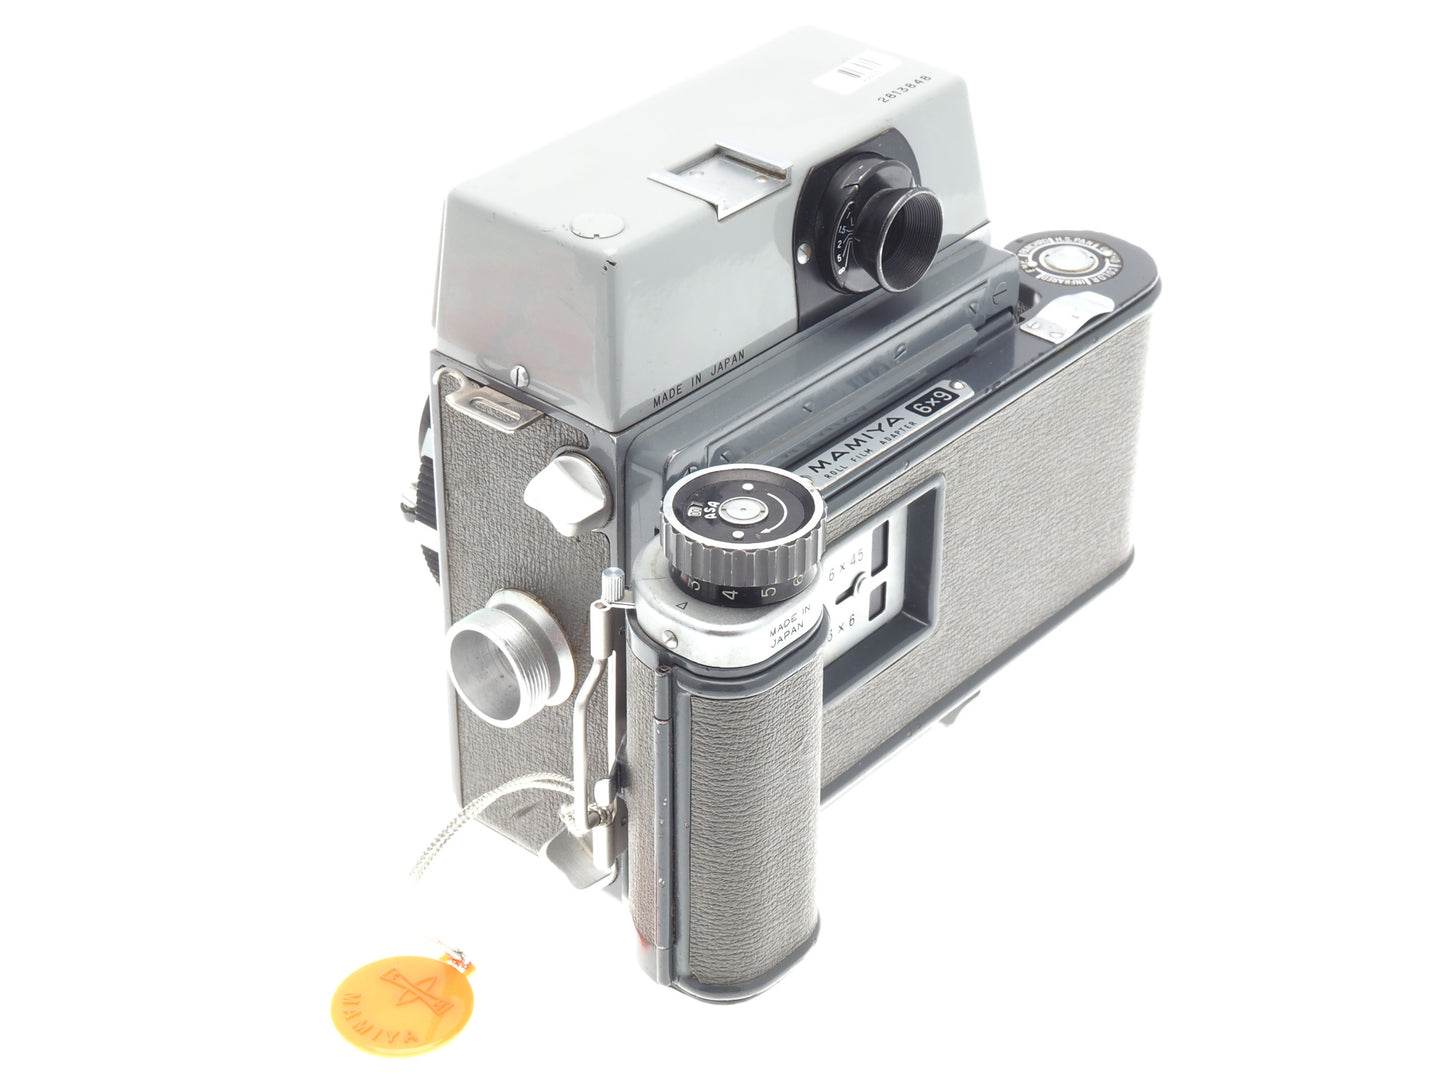 Mamiya Press + 90mm f3.5 Sekor + 6x9 Roll Film Adapter